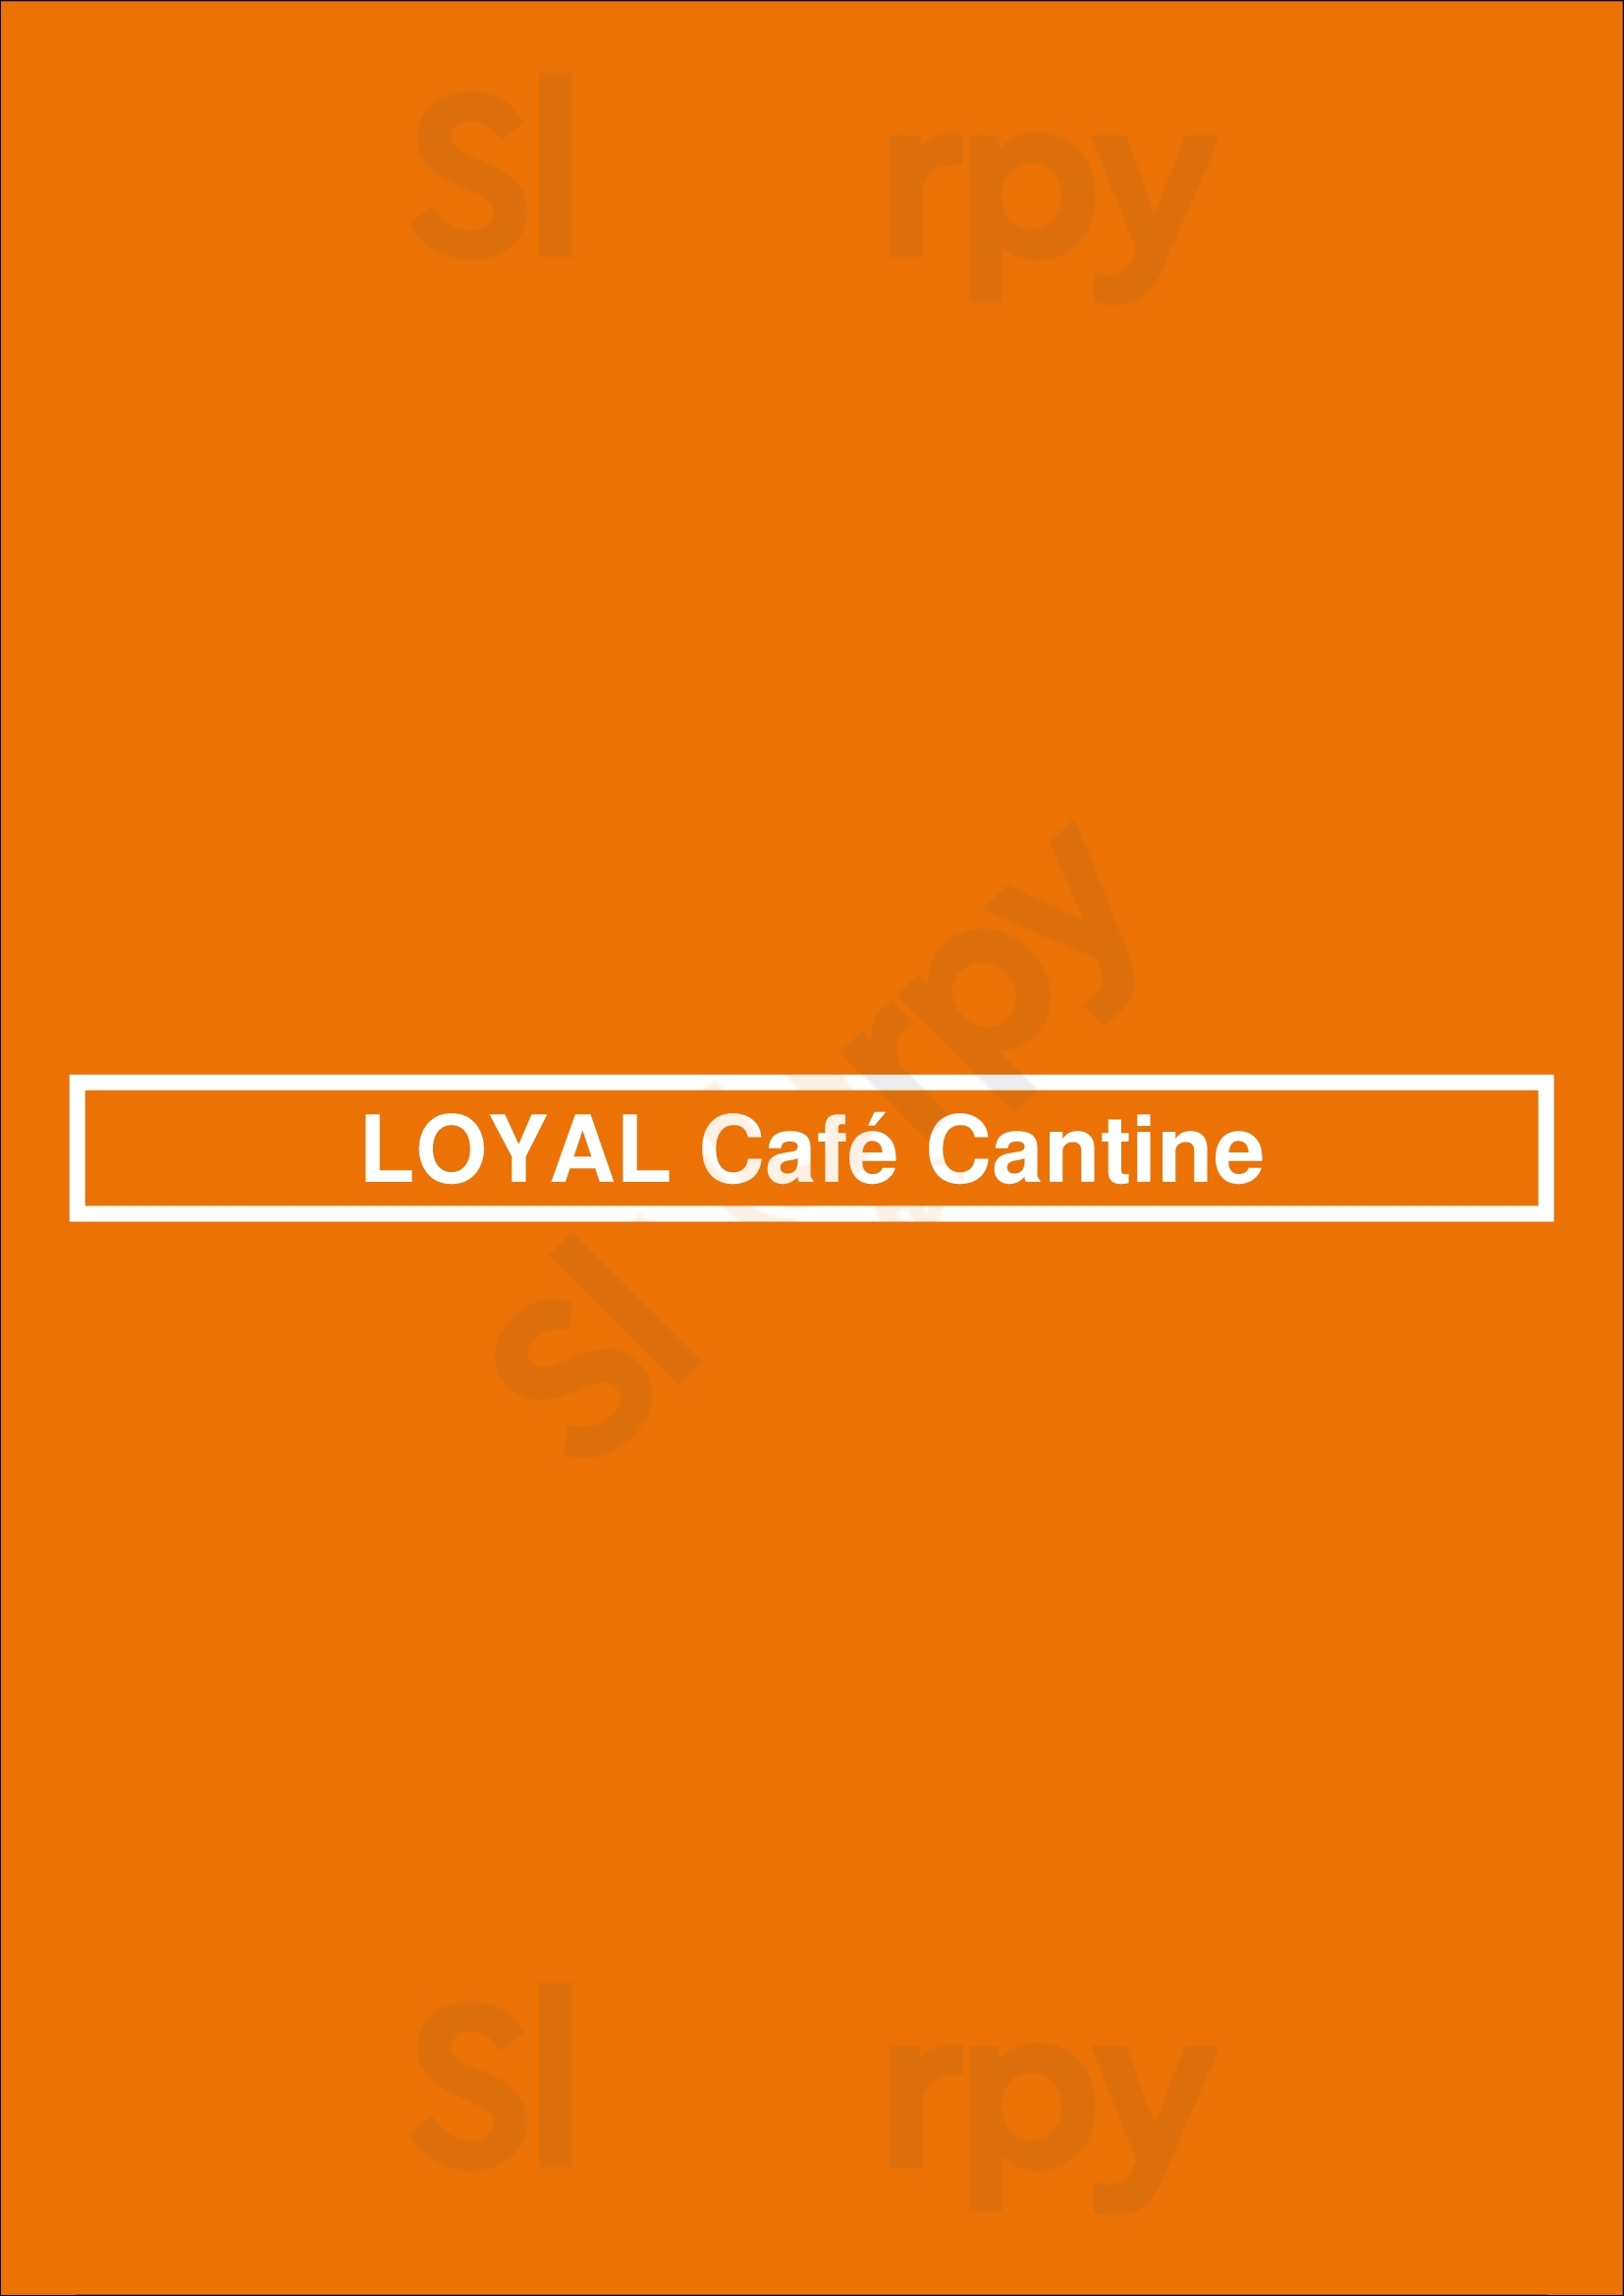 Loyal Café Cantine Paris Menu - 1